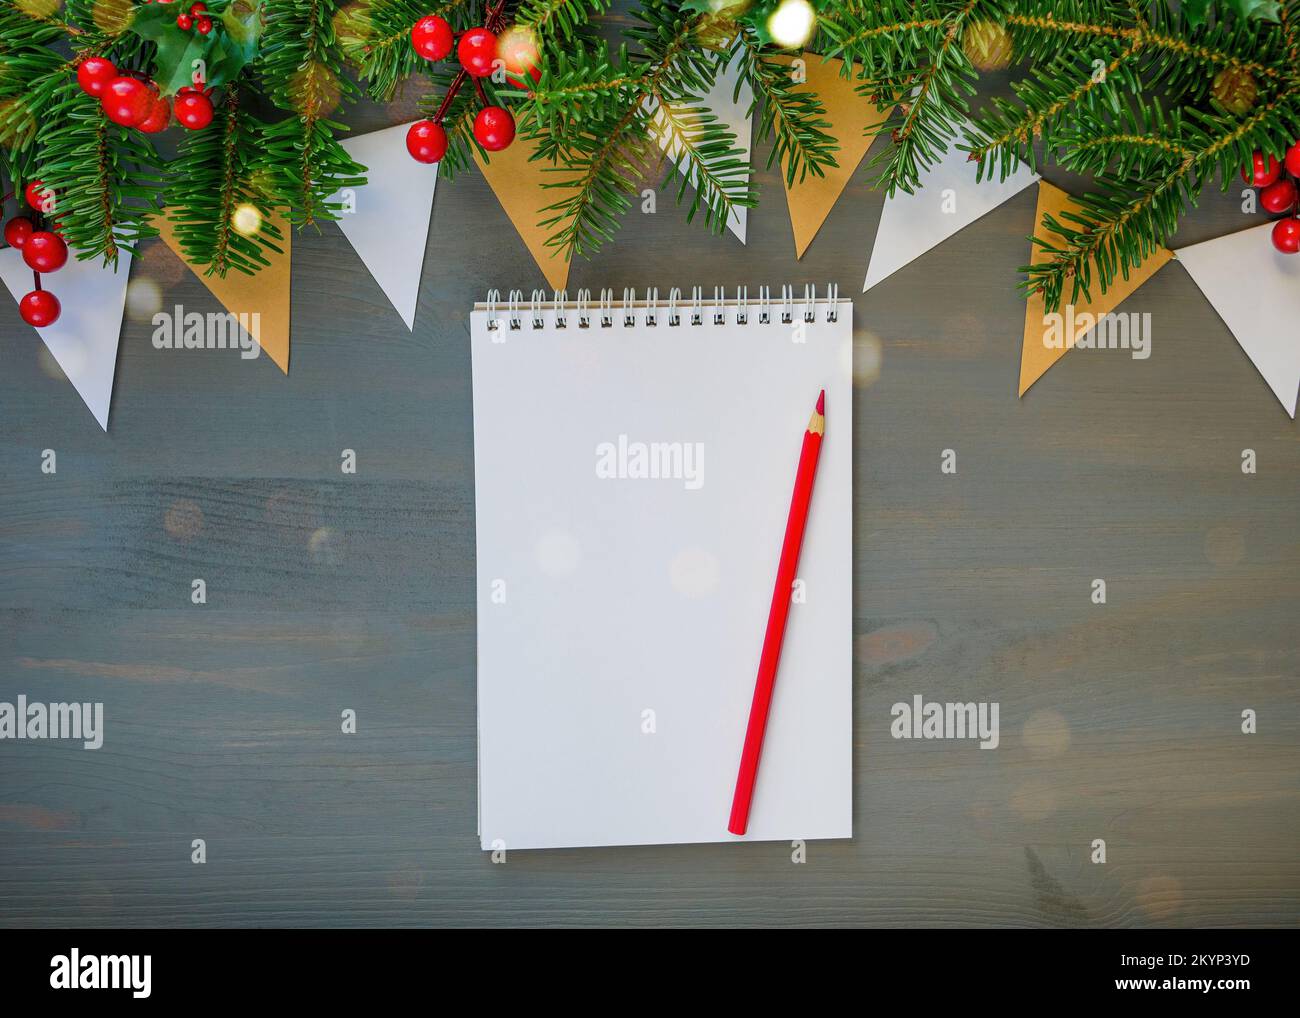 Vista superior de la Navidad con fondo blanco abrir el bloc de notas, lápiz y decoraciones de navidad Foto de stock